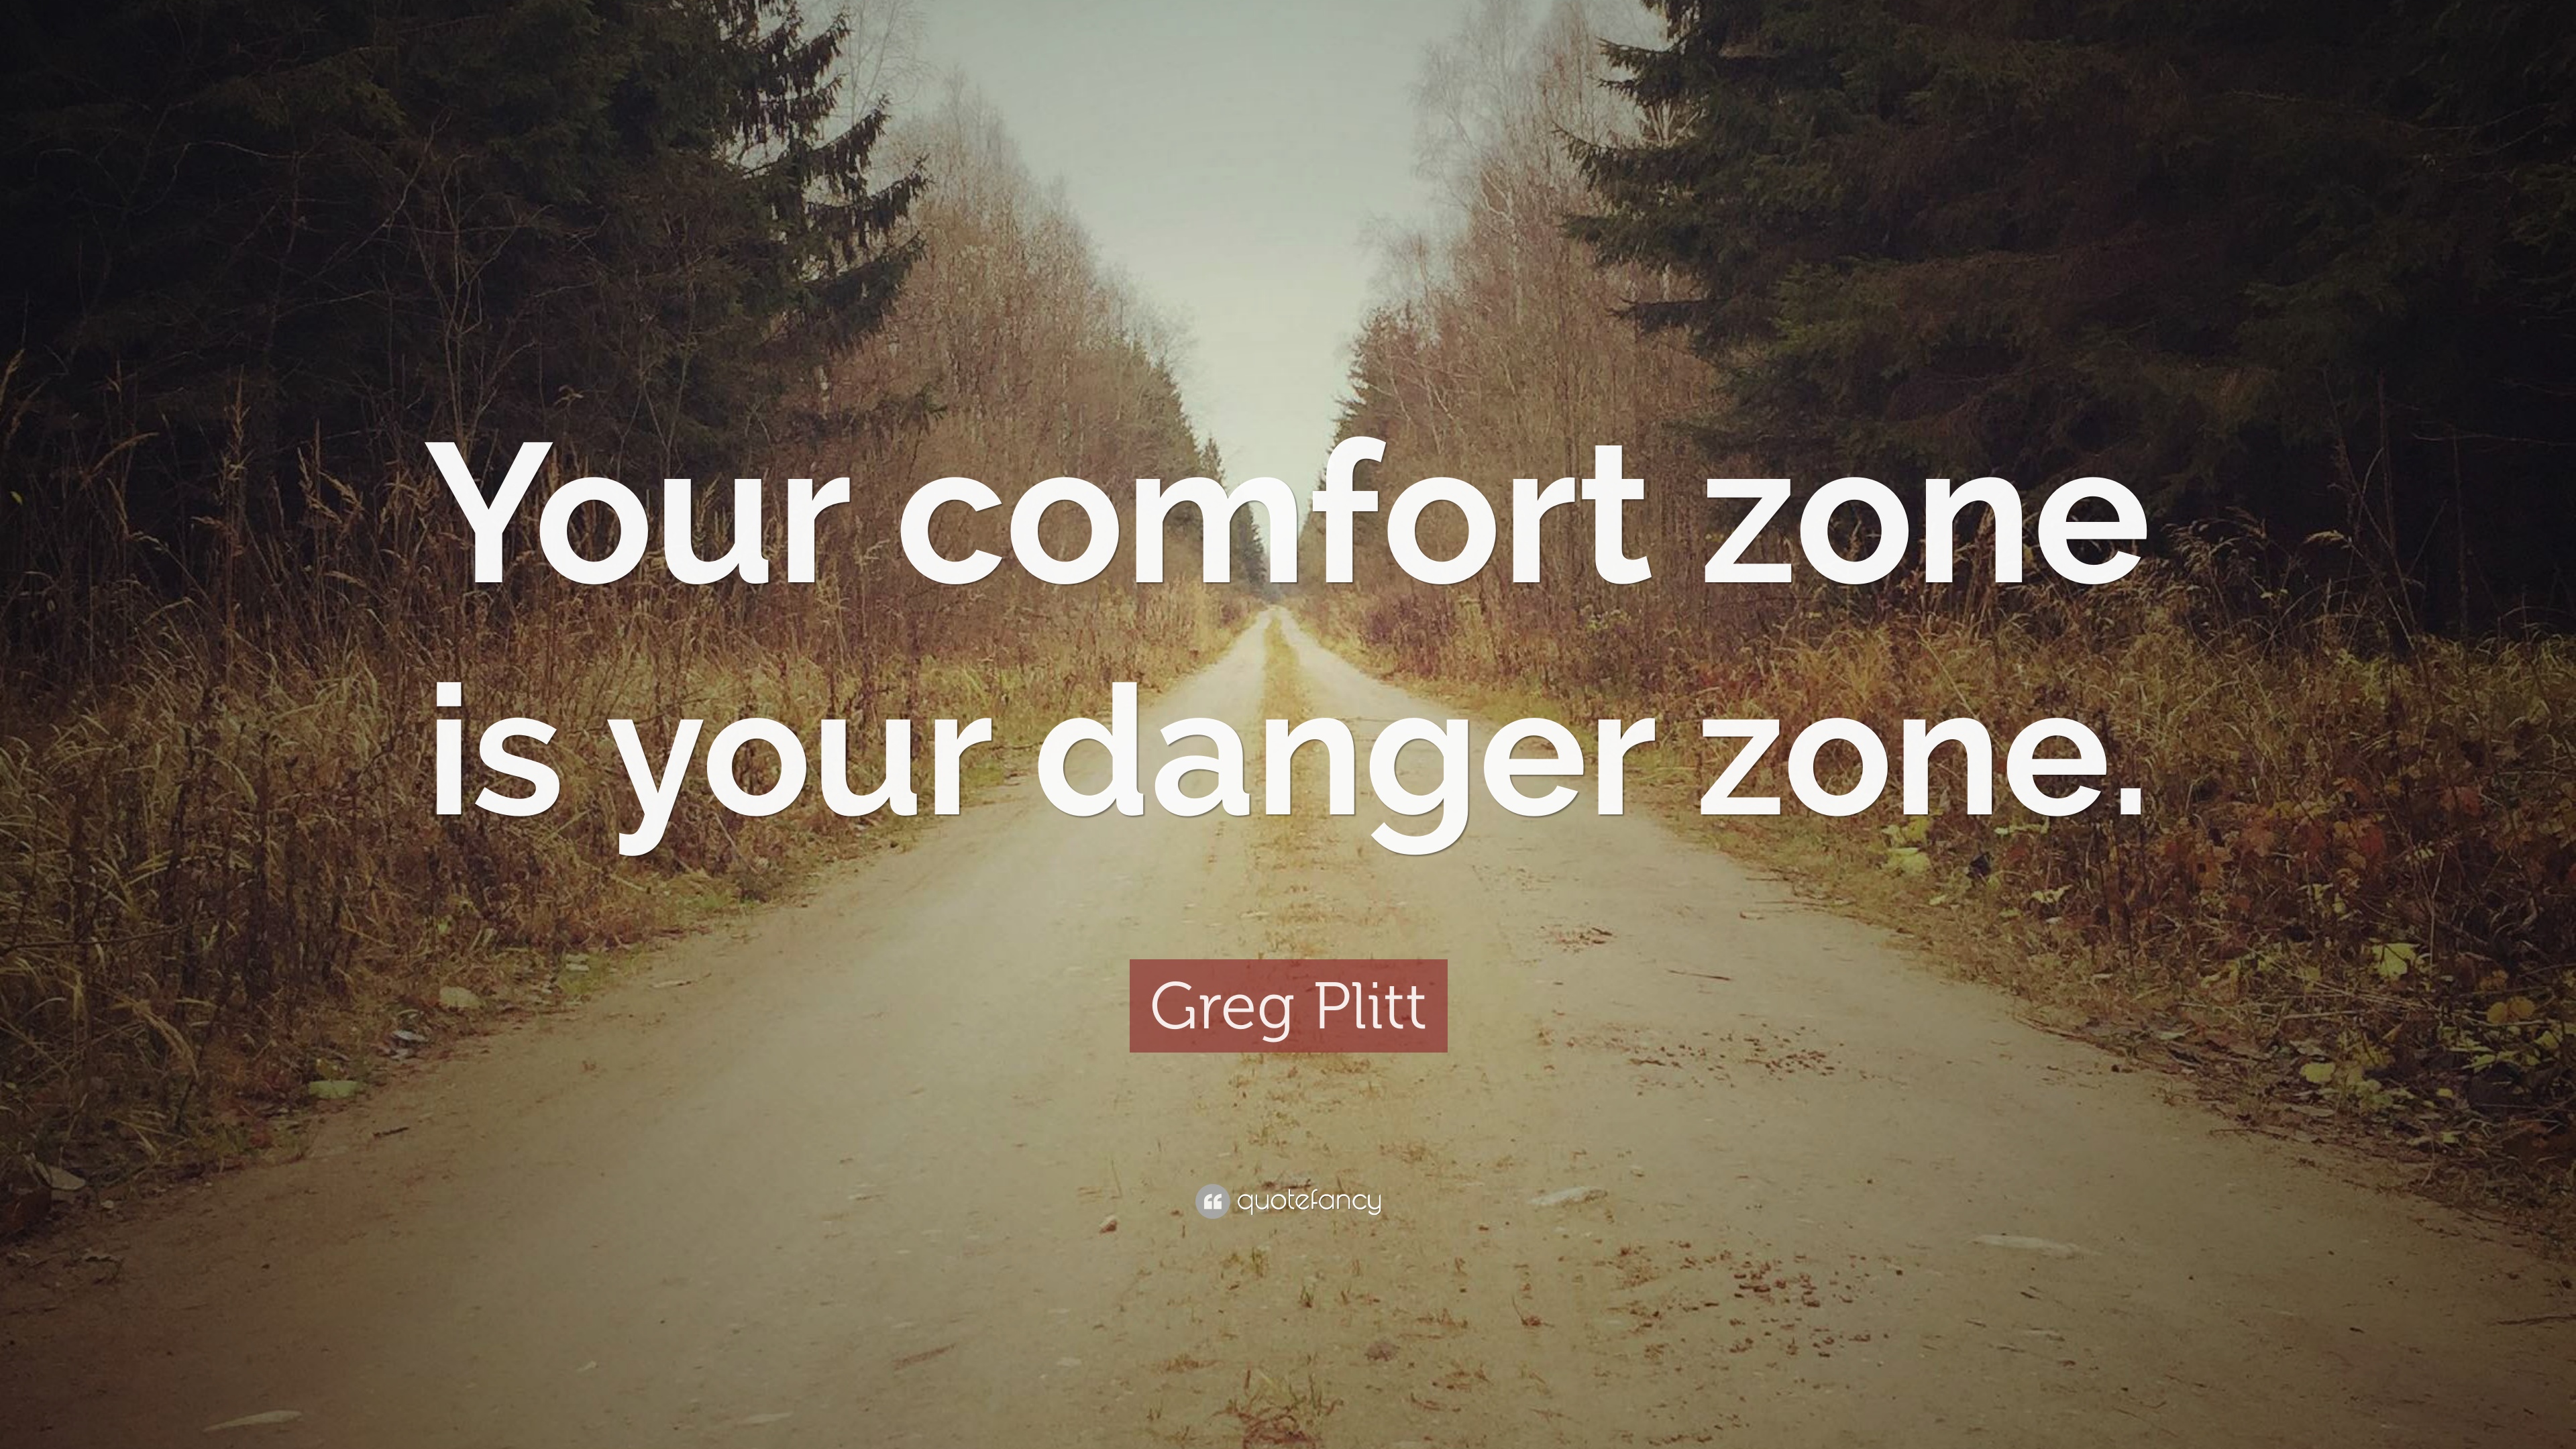 Greg Plitt Quote: “Your comfort zone is your danger zone.” 12